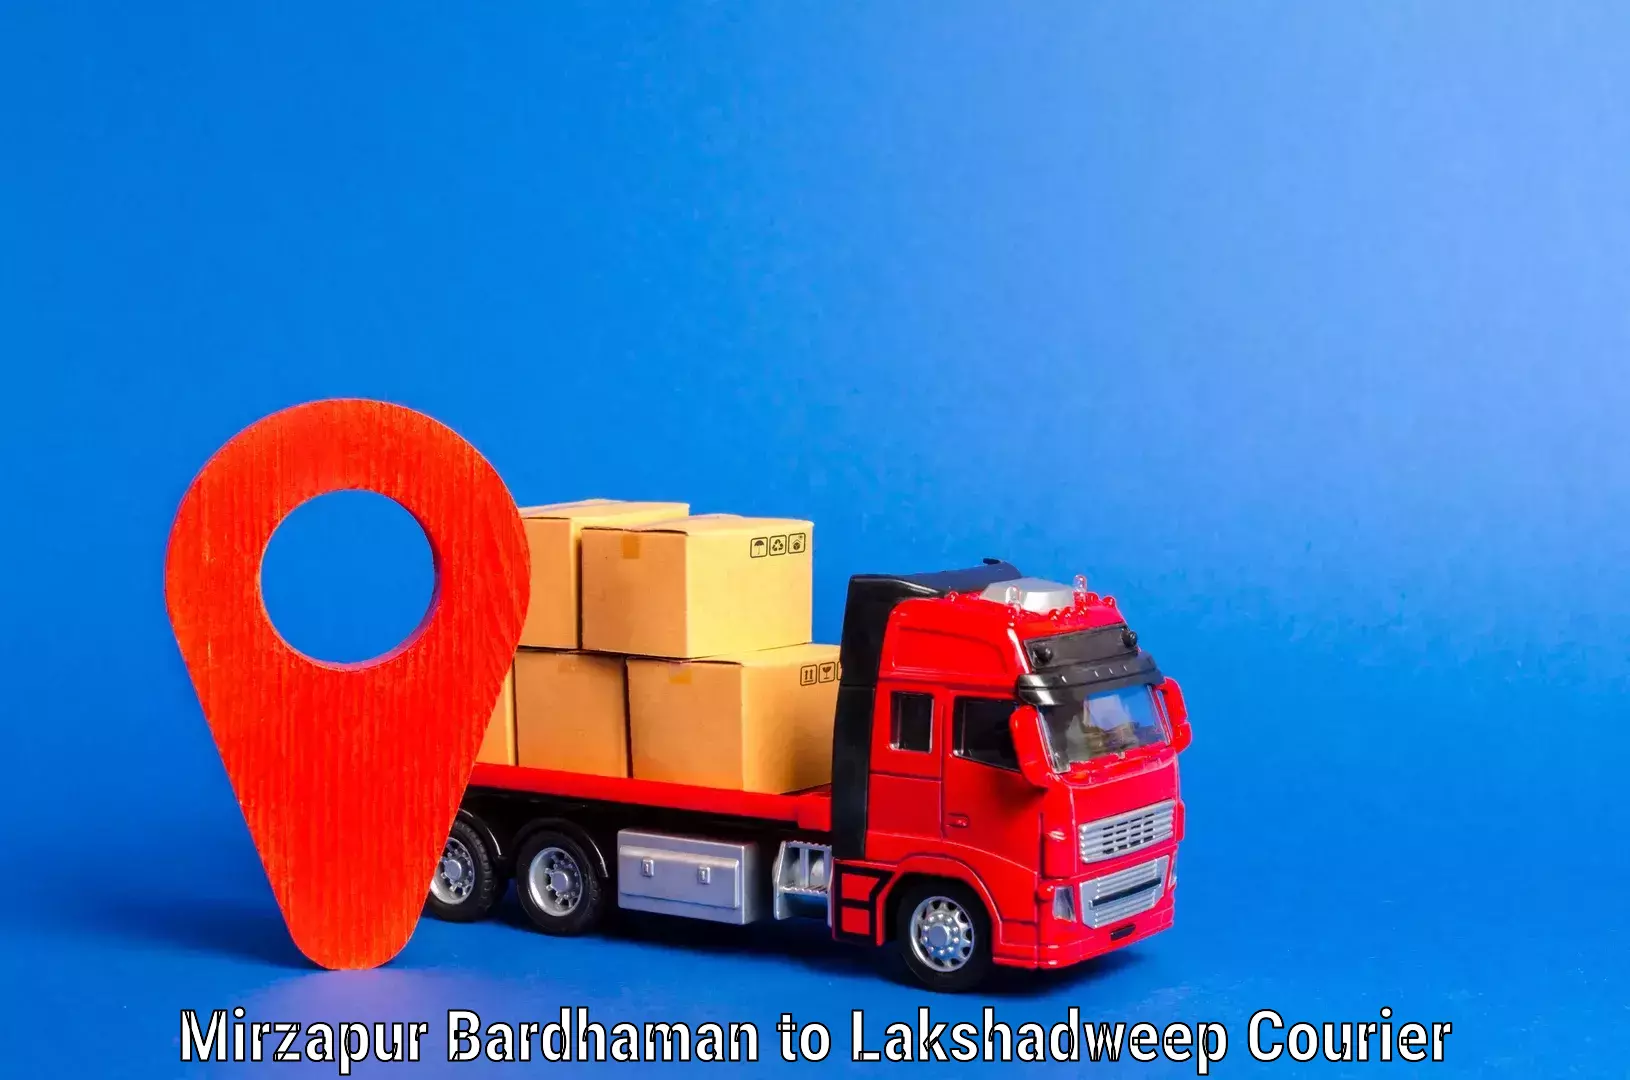 Furniture transport services Mirzapur Bardhaman to Lakshadweep